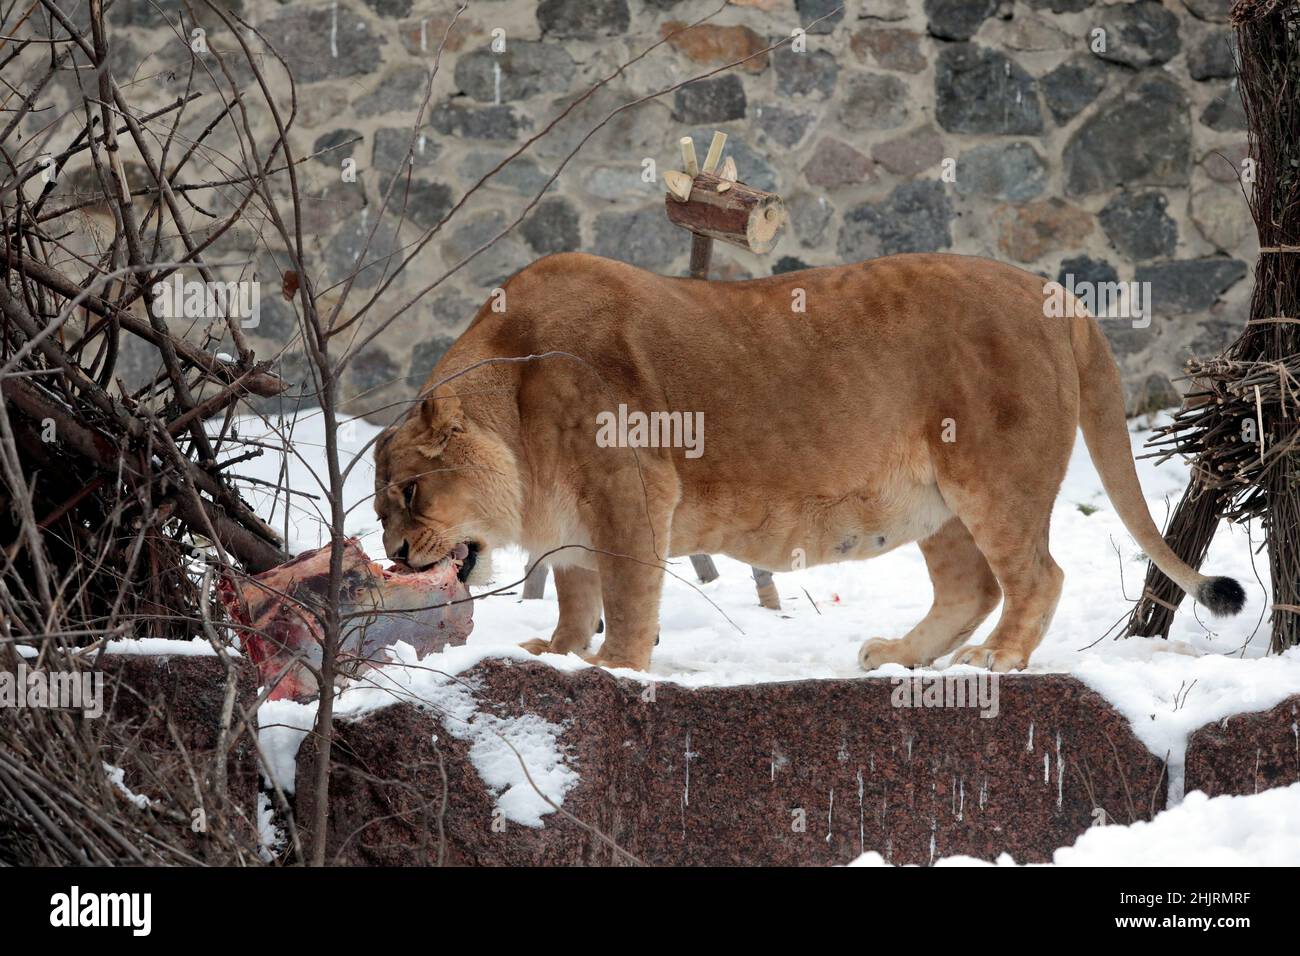 KIEW, UKRAINE - 28. JANUAR 2022 - Eine Löwin des Stolzes, der 13 Jahre alt ist, isst Fleisch im Kiewer Zoo, Kiew, der Hauptstadt der Ukraine. Stockfoto